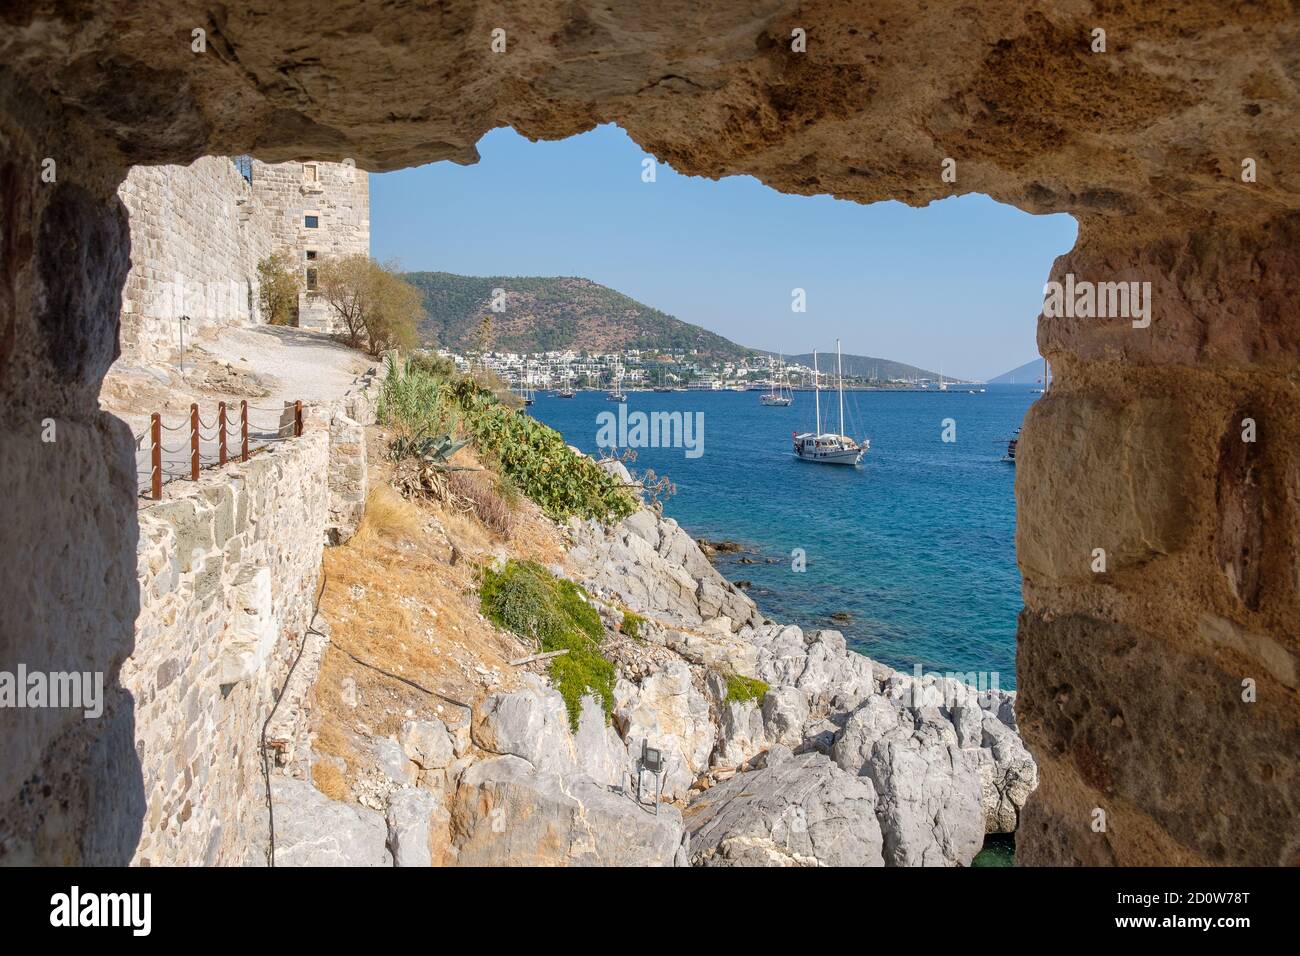 Turquie : vue sur le port de plaisance à travers les ruines du château de Bodrum Banque D'Images